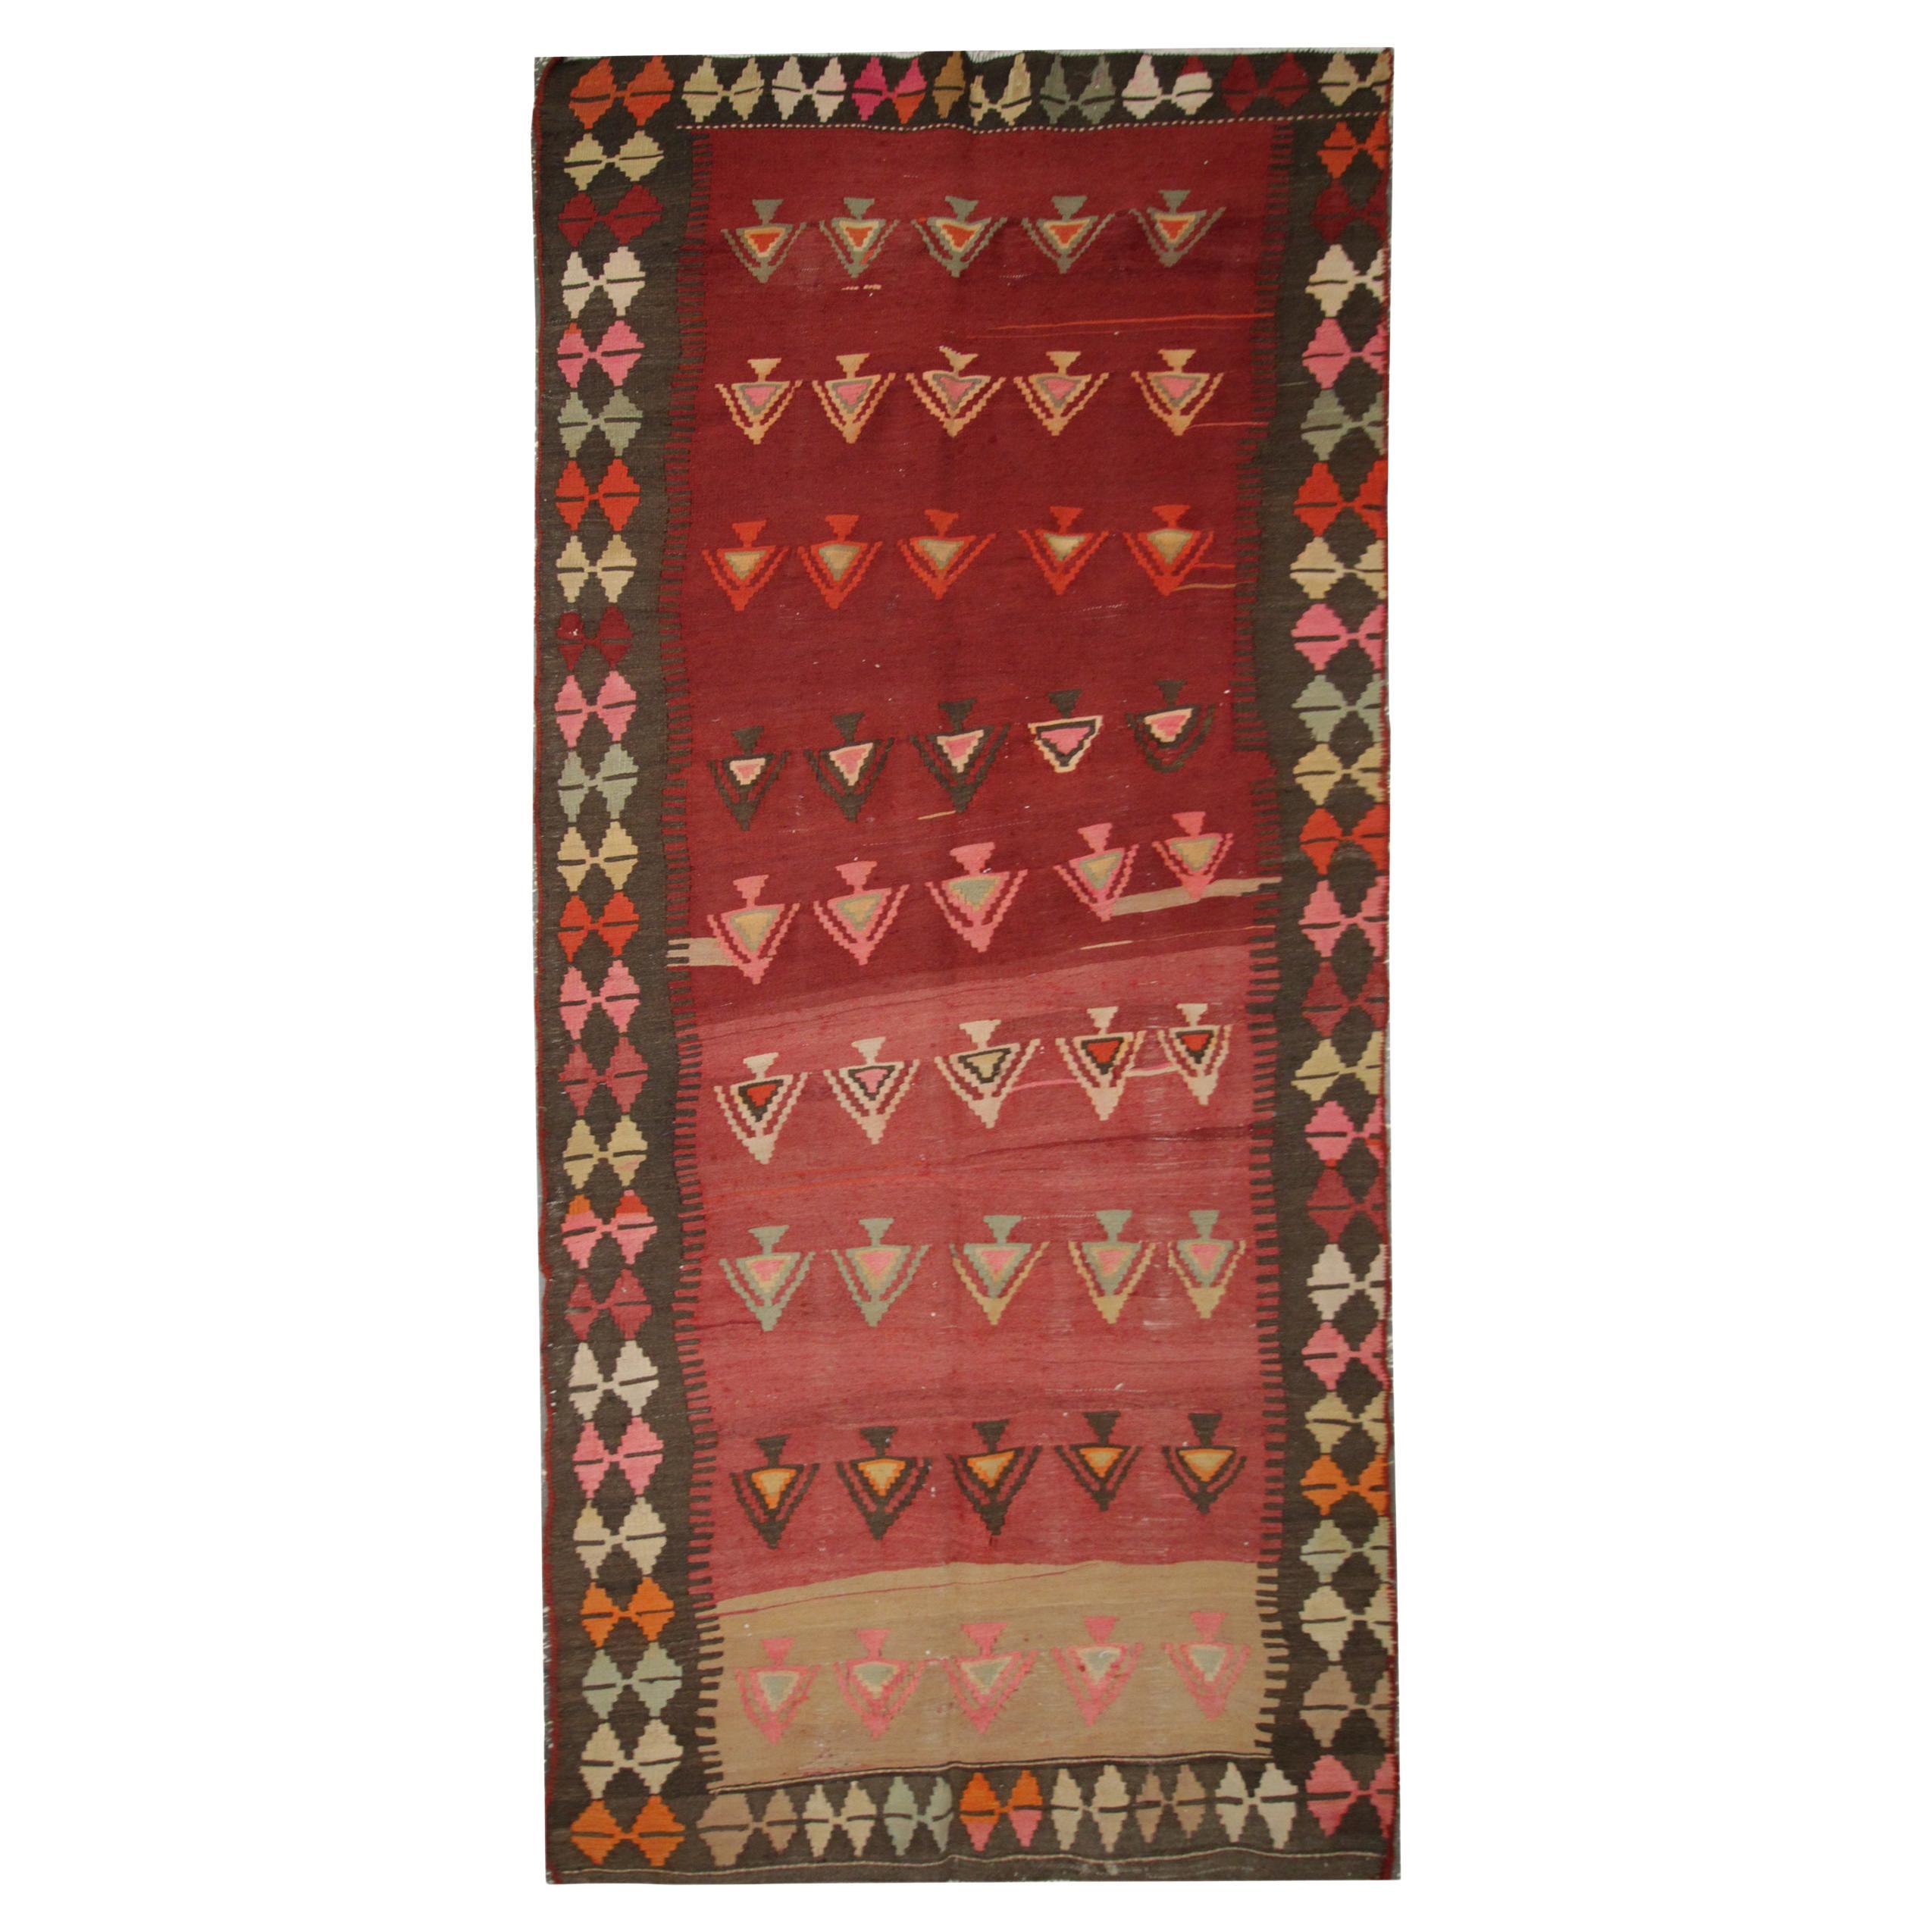 Handgefertigter Vintage-Kelim-Teppich, traditioneller roter Stammeskunst-Teppich